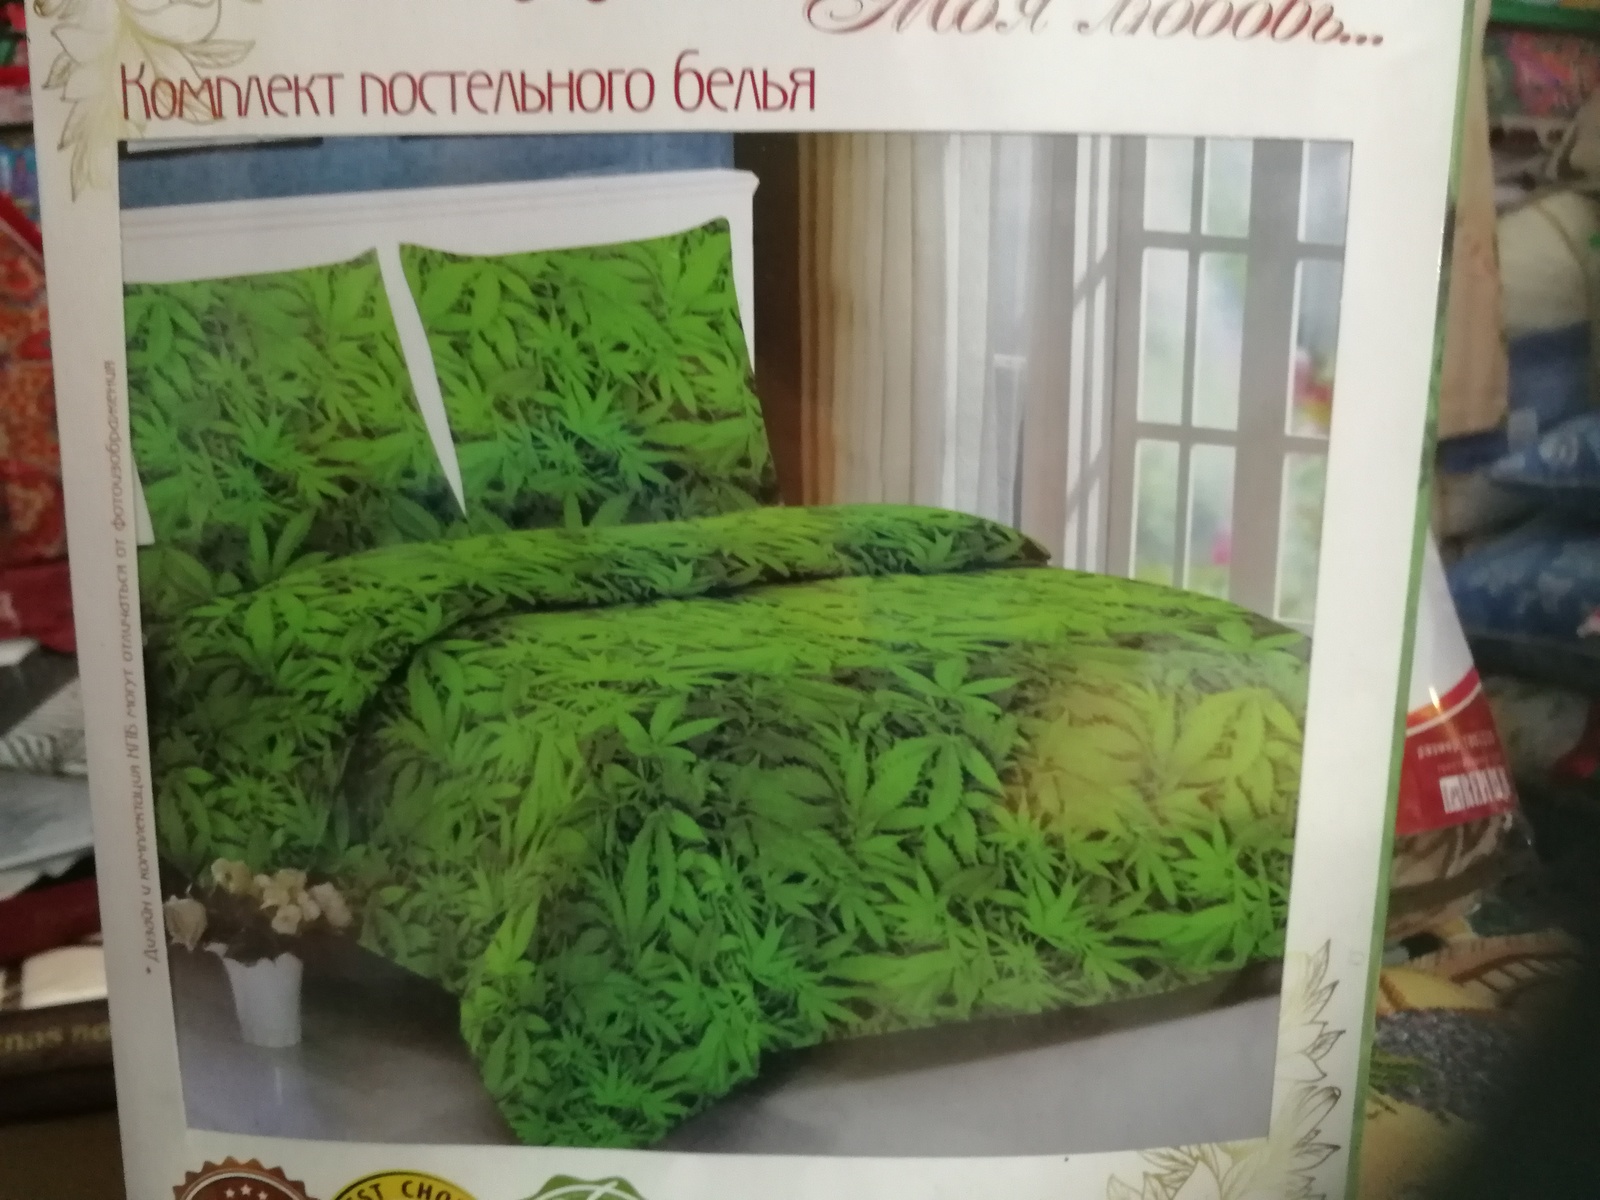 Постельное белье с рисунком марихуаны марихуана пустоцвет